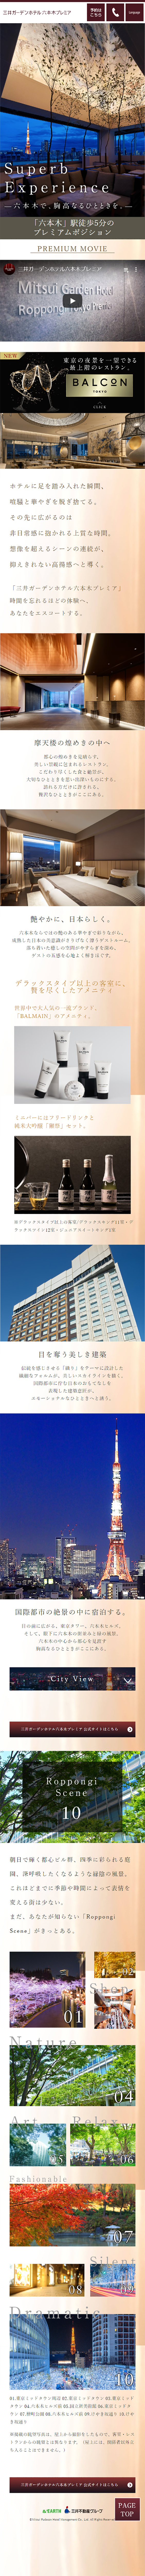 三井ガーデンホテル六本木プレミア_sp_1